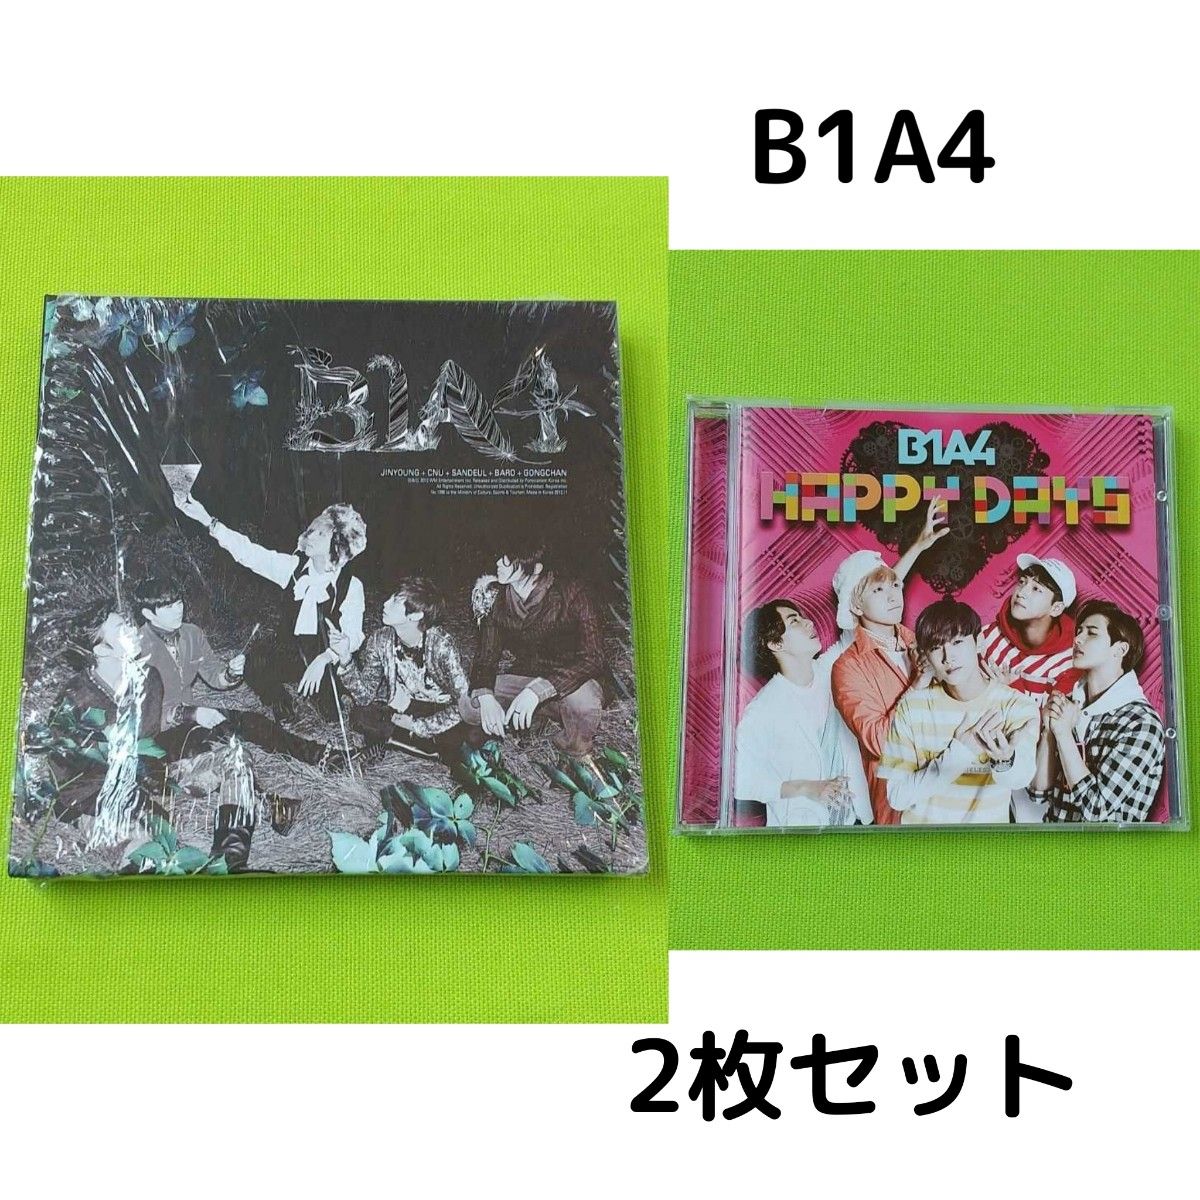 【2枚セット】B1A4 IN THE WIND & HAPPY DAYS K-POP CD